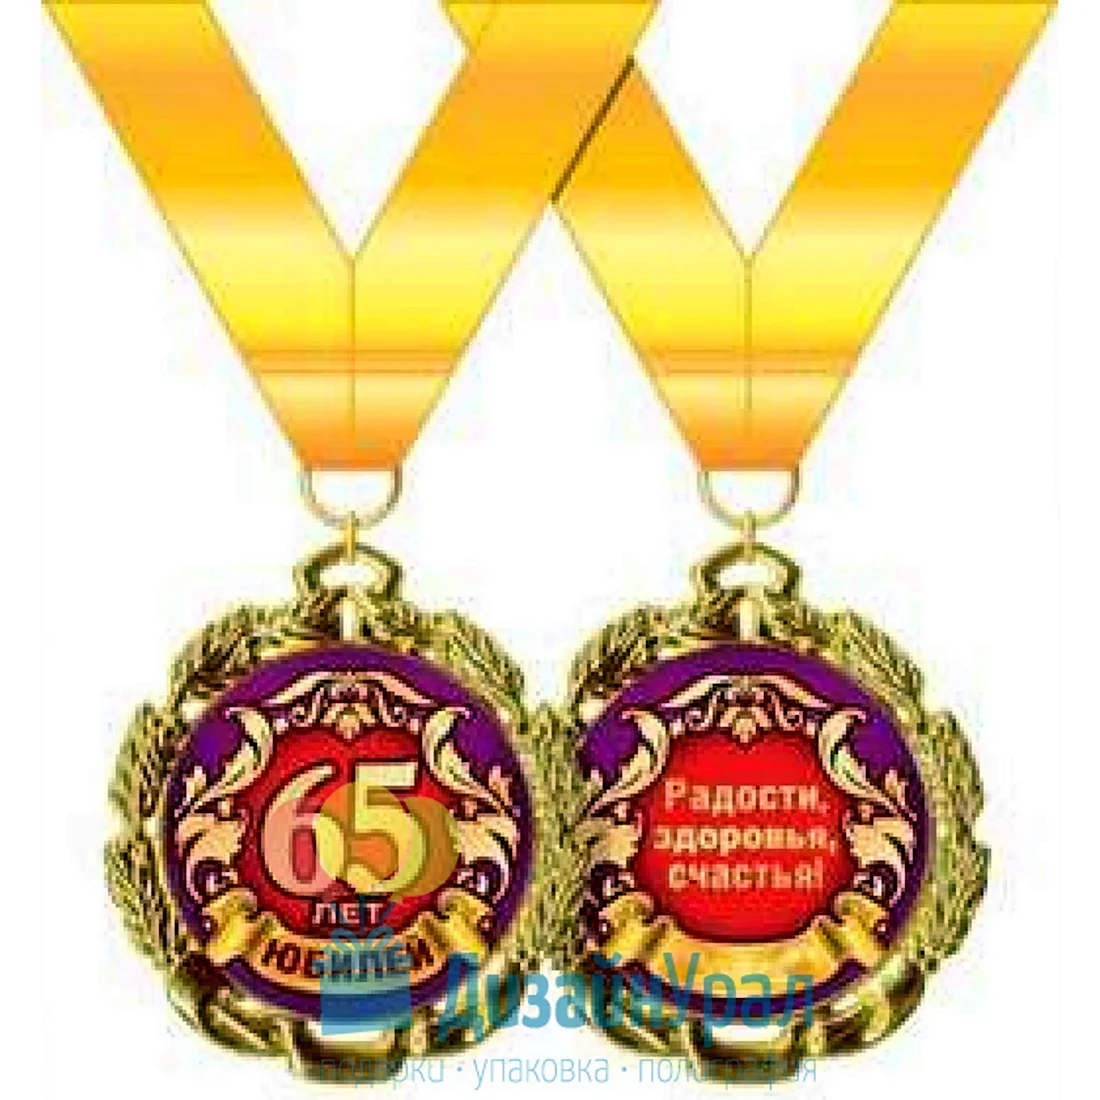 Медаль с юбилеем 65 лет. Открытка для мужчины